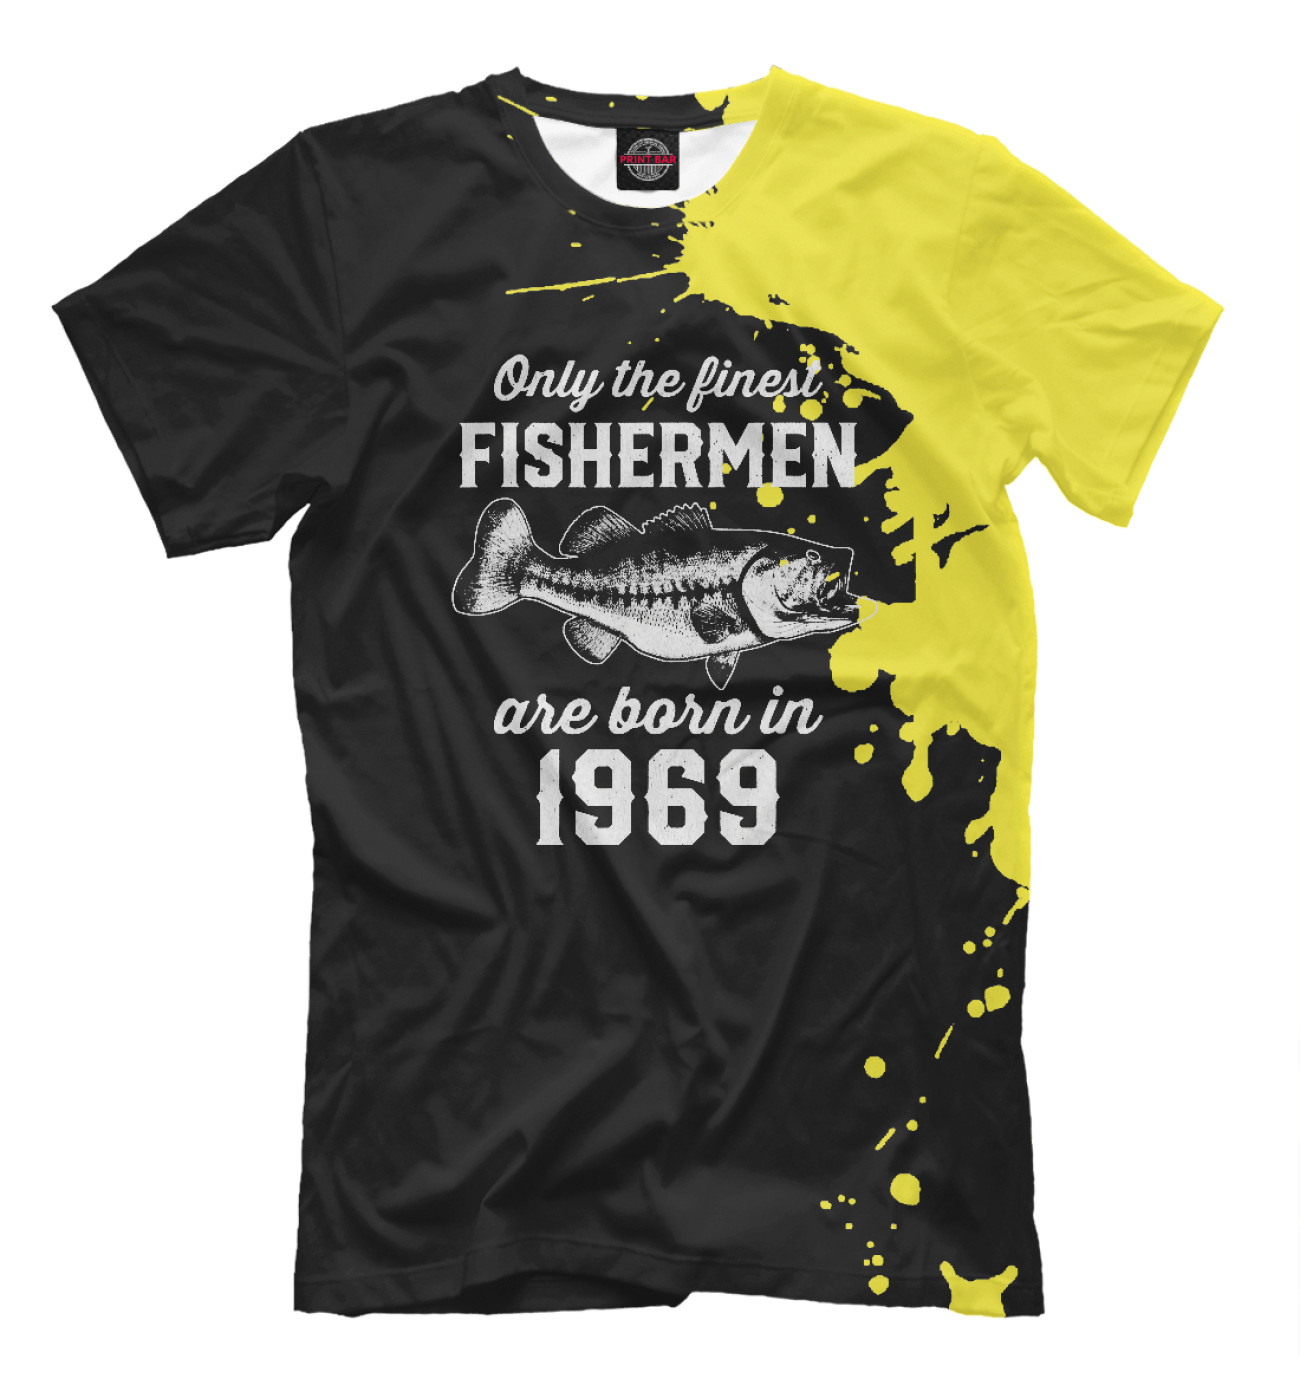 Мужская Футболка Fishermen 1969, артикул: DHE-426833-fut-2